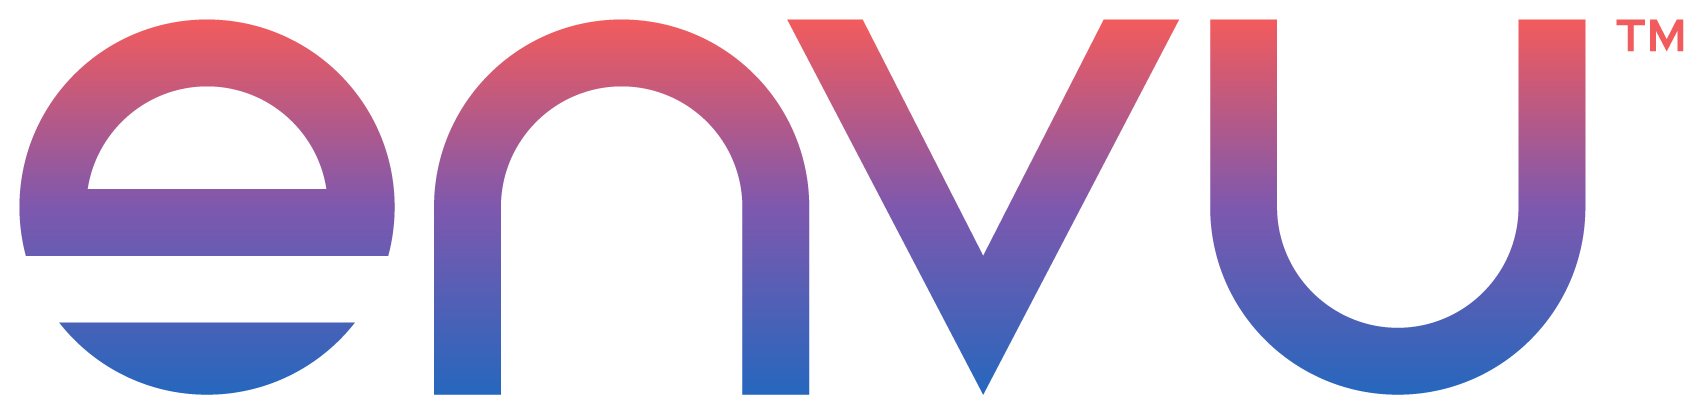 Logo Envu.jpg